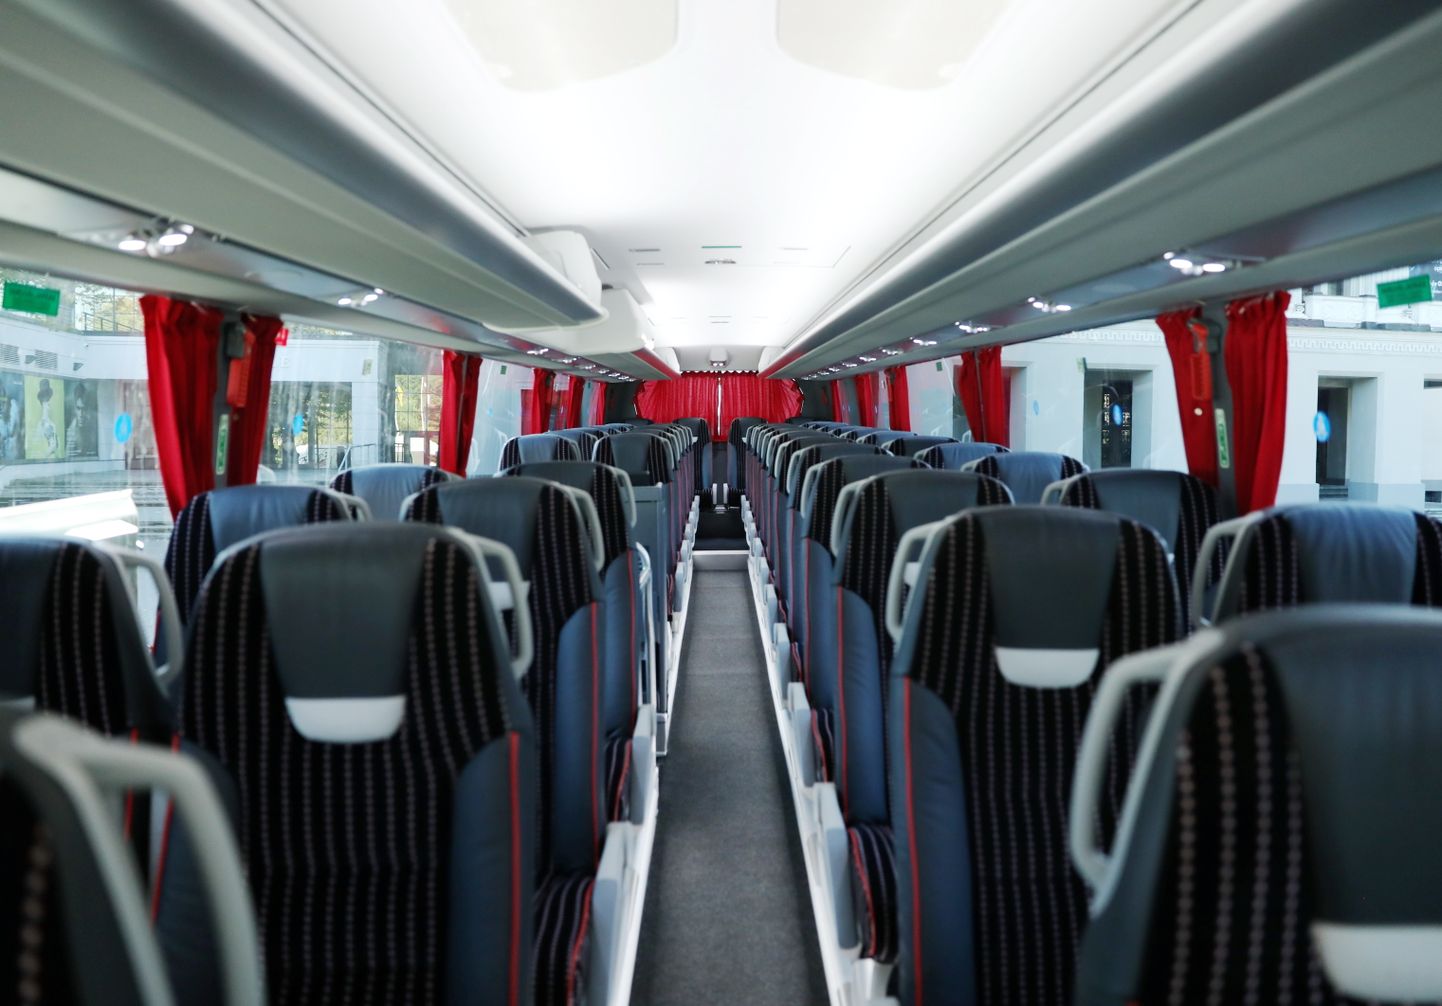 Starptautiskā pasažieru pārvadātāja "Lux Express" jaunais autobuss "Scania Irizar i6S Efficient" prezentācijas pasākuma laikā pie Latvijas Nacionālās operas un baleta ēkas.